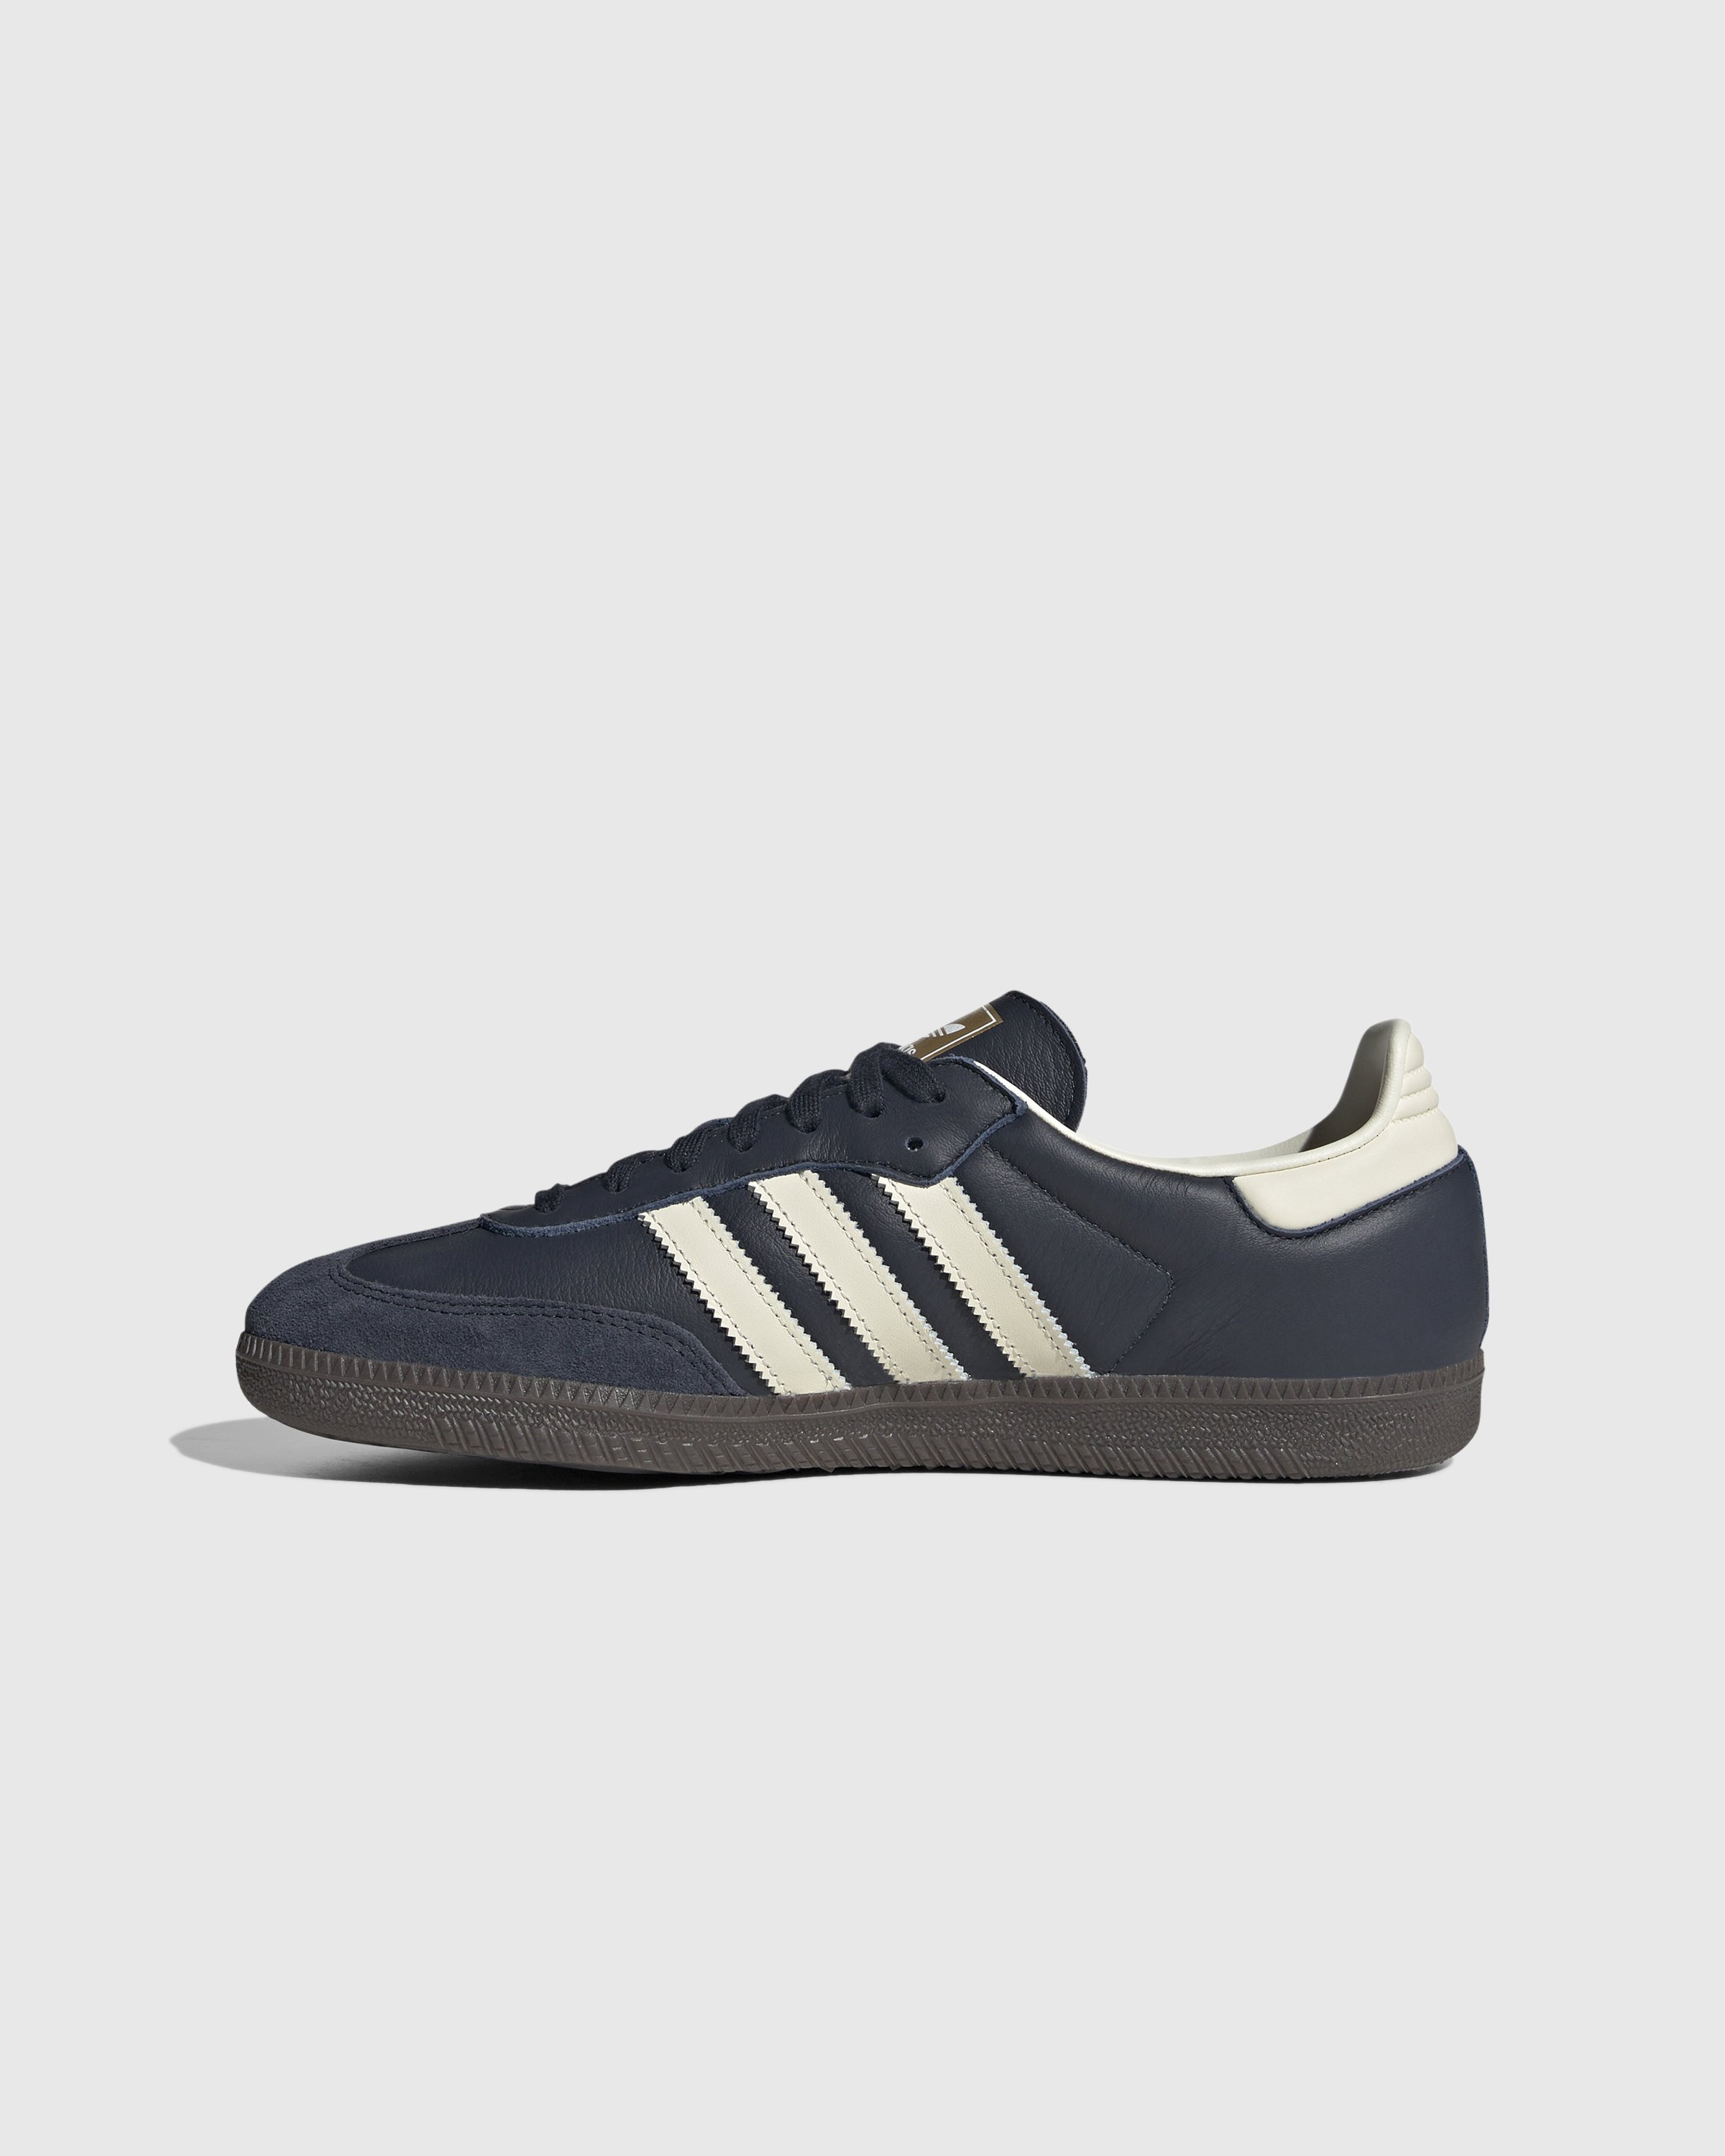 Adidas - Samba OG Navy White  - Footwear - Blue - Image 2